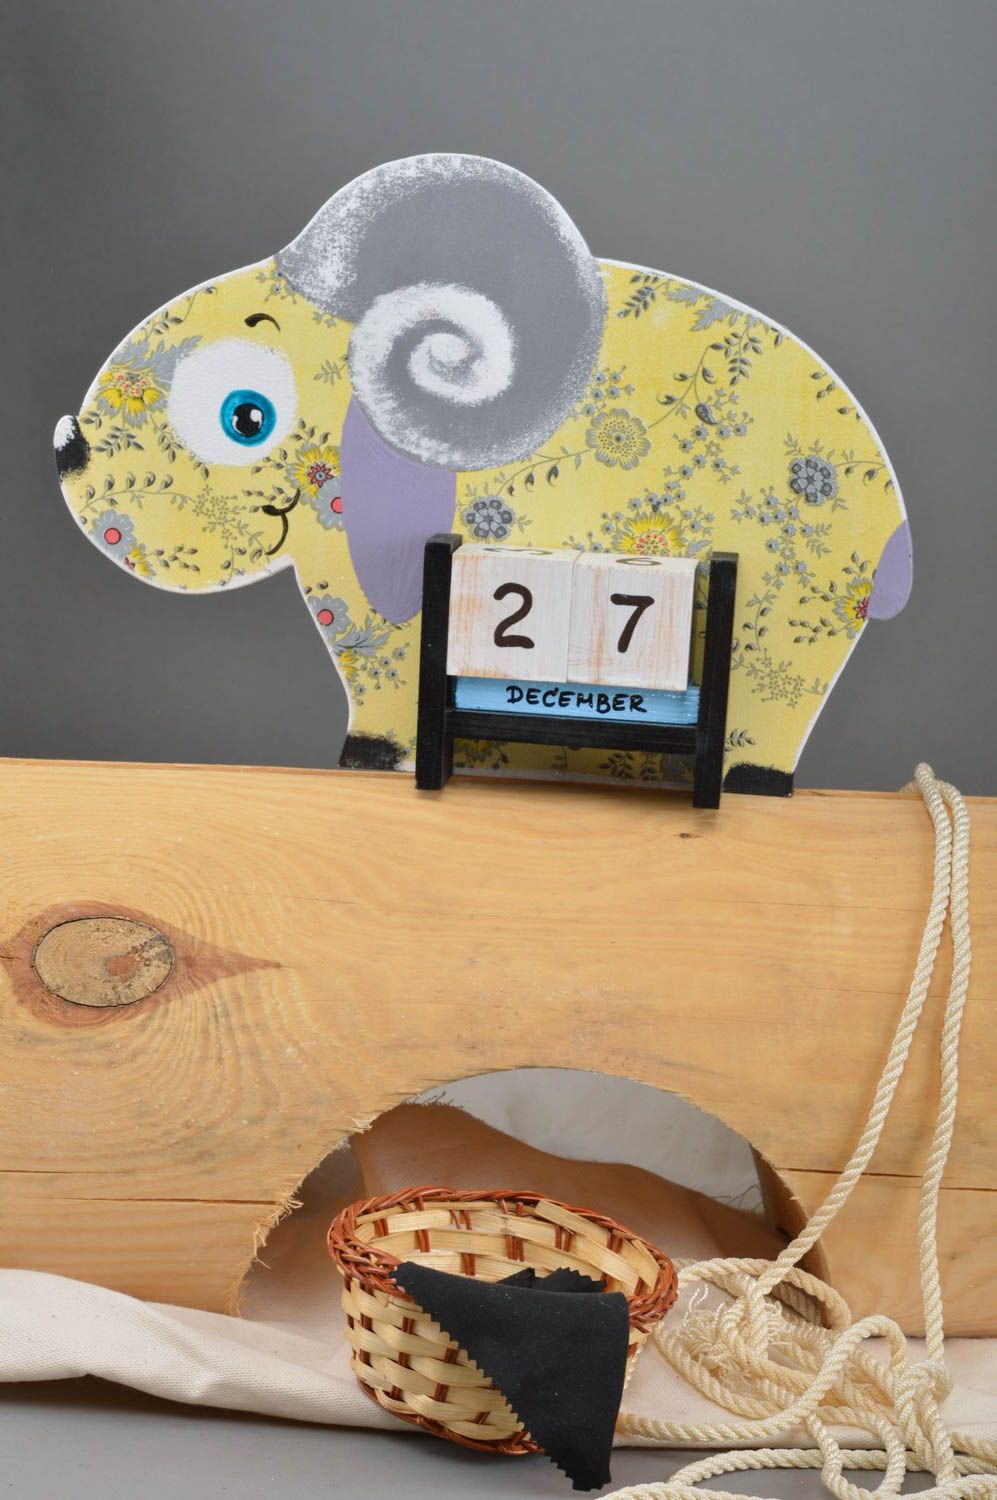 Календарь в виде овечки небольшой в желтых тонах красивая декупаж ручной работы фото 1